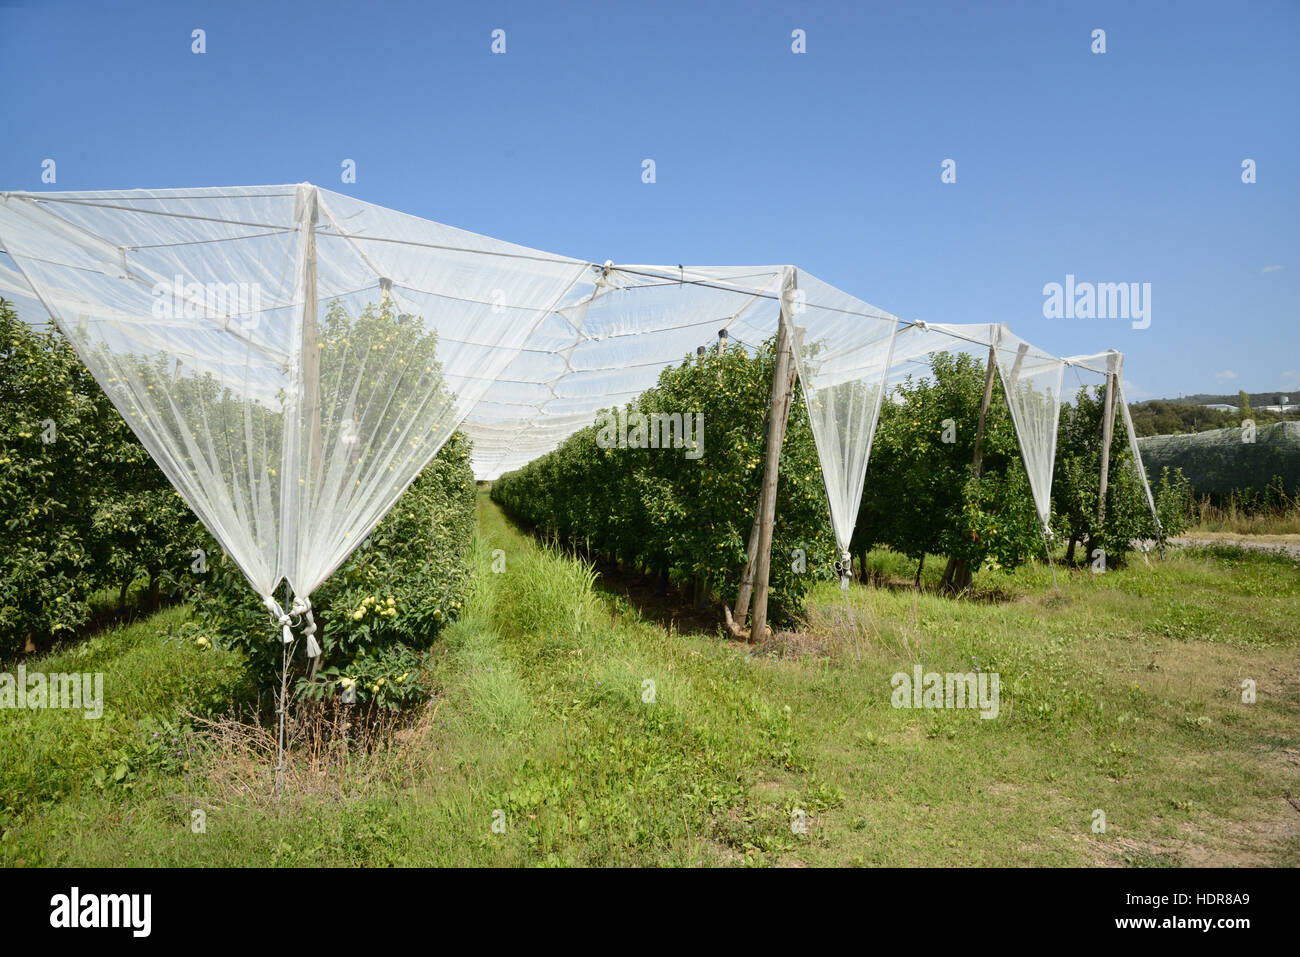 Schutz der Intensive Frucht Pflanzenproduktion oder Apfelbäume im Durance-Tal in der Nähe von Manosque Provence Frankreich Stockfoto